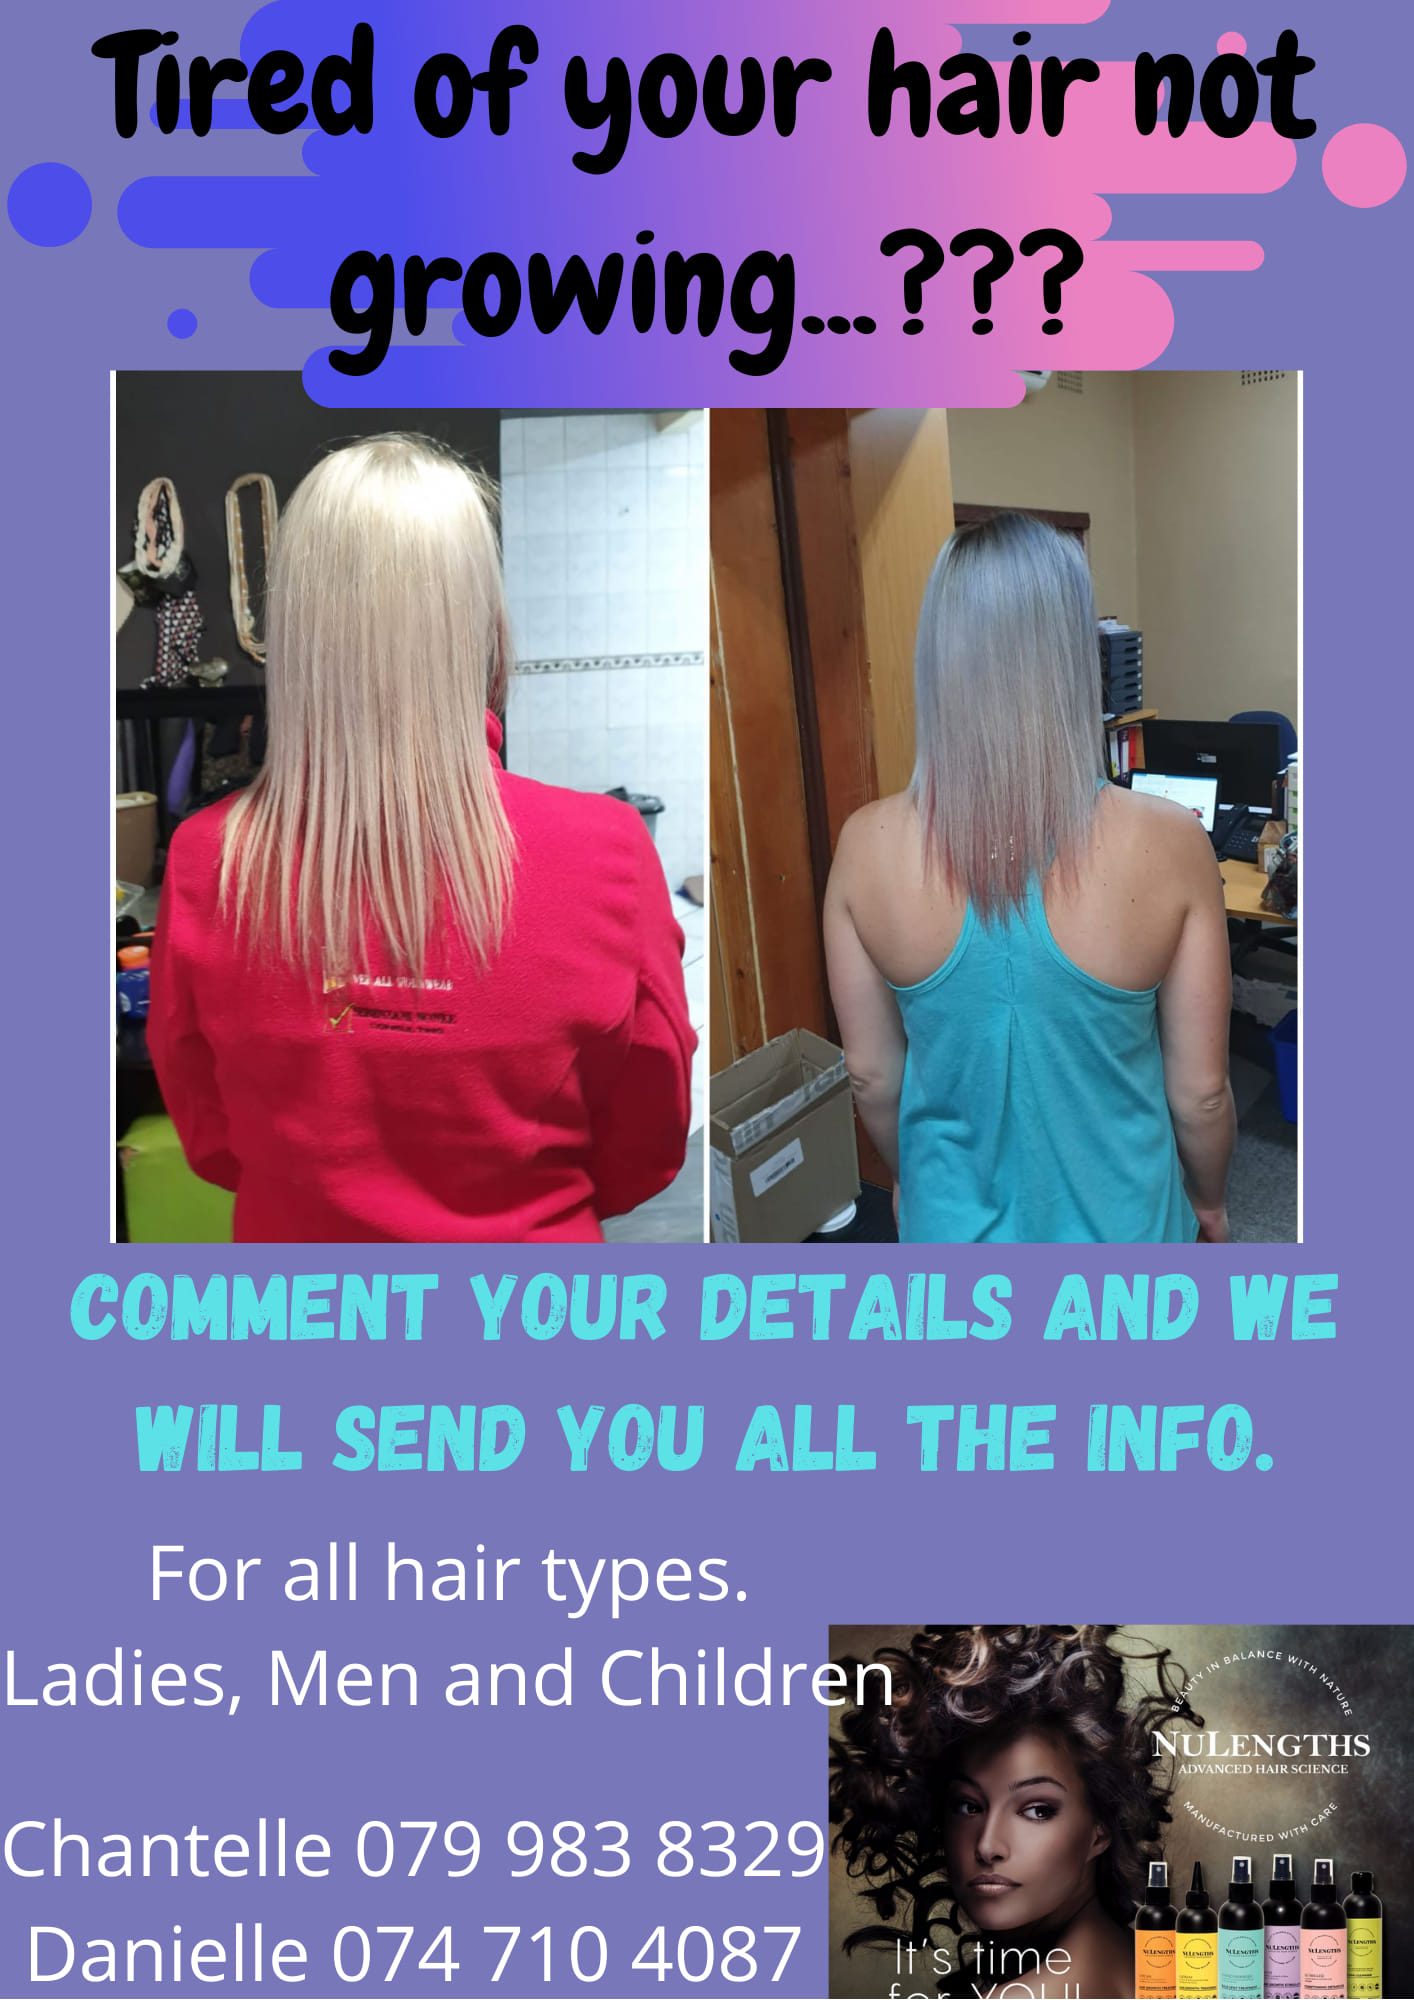 Hair growth Treatments that work!!